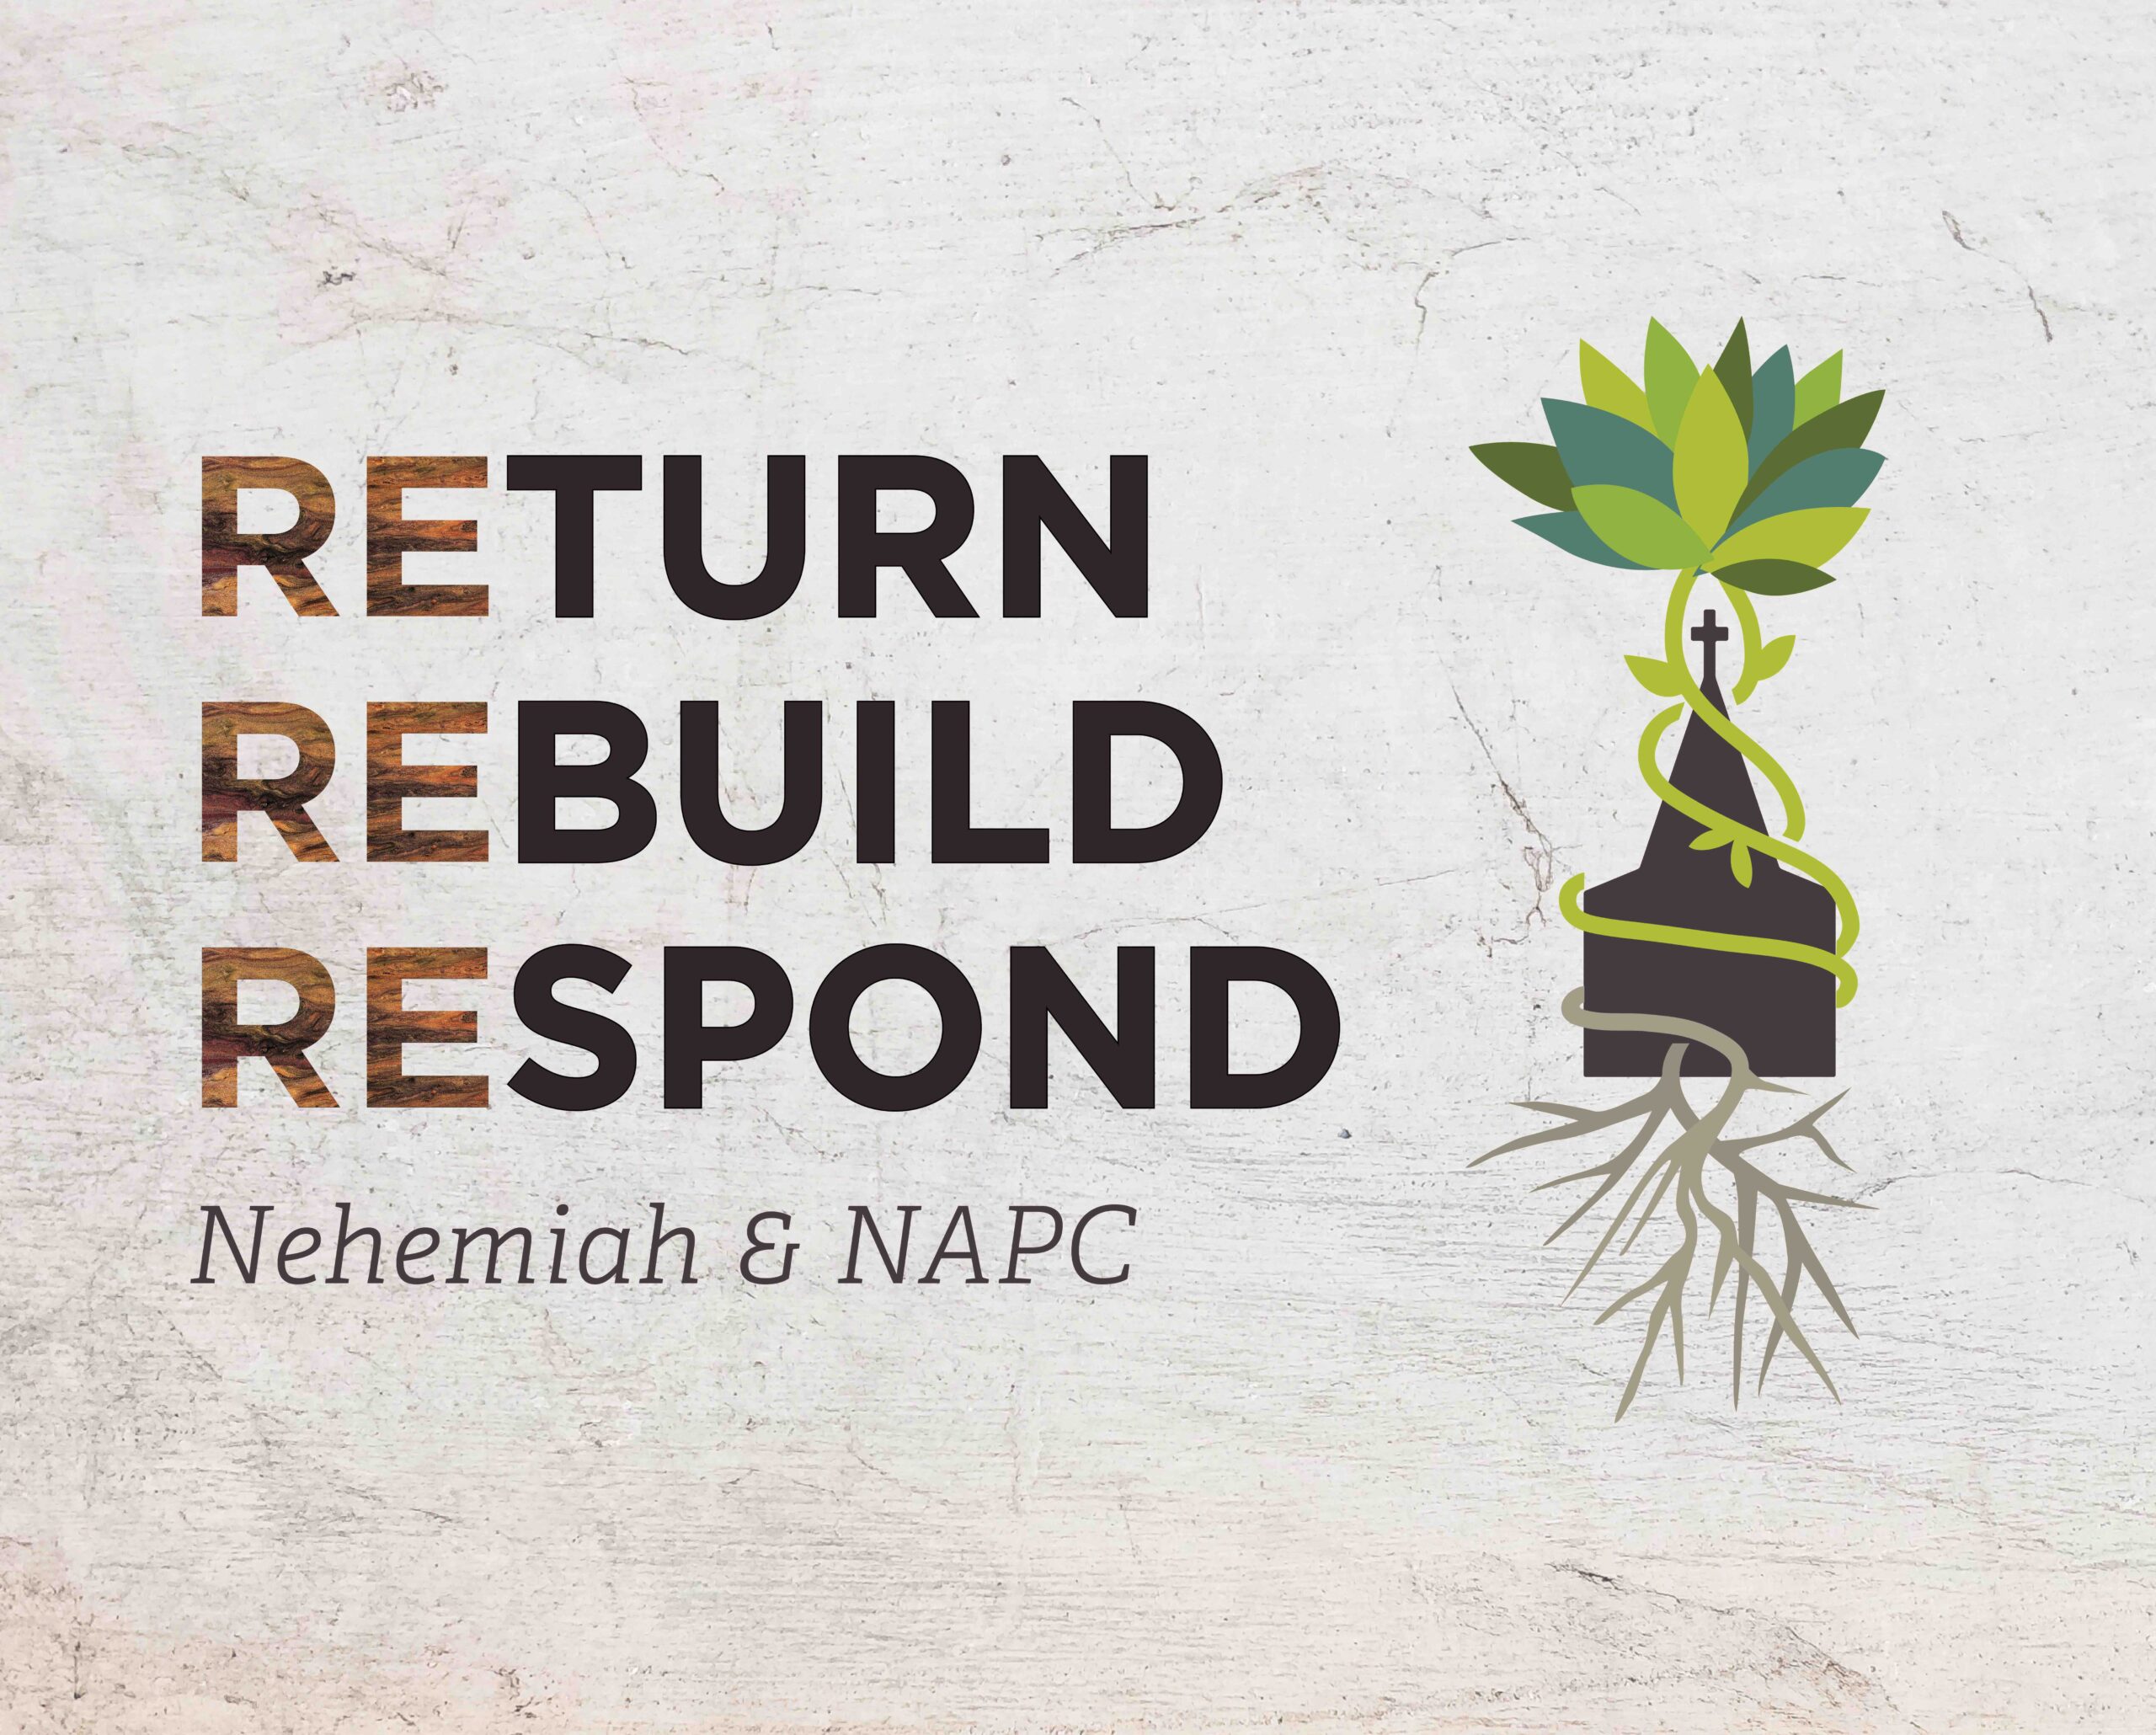 Nehemiah & NAPC: Return